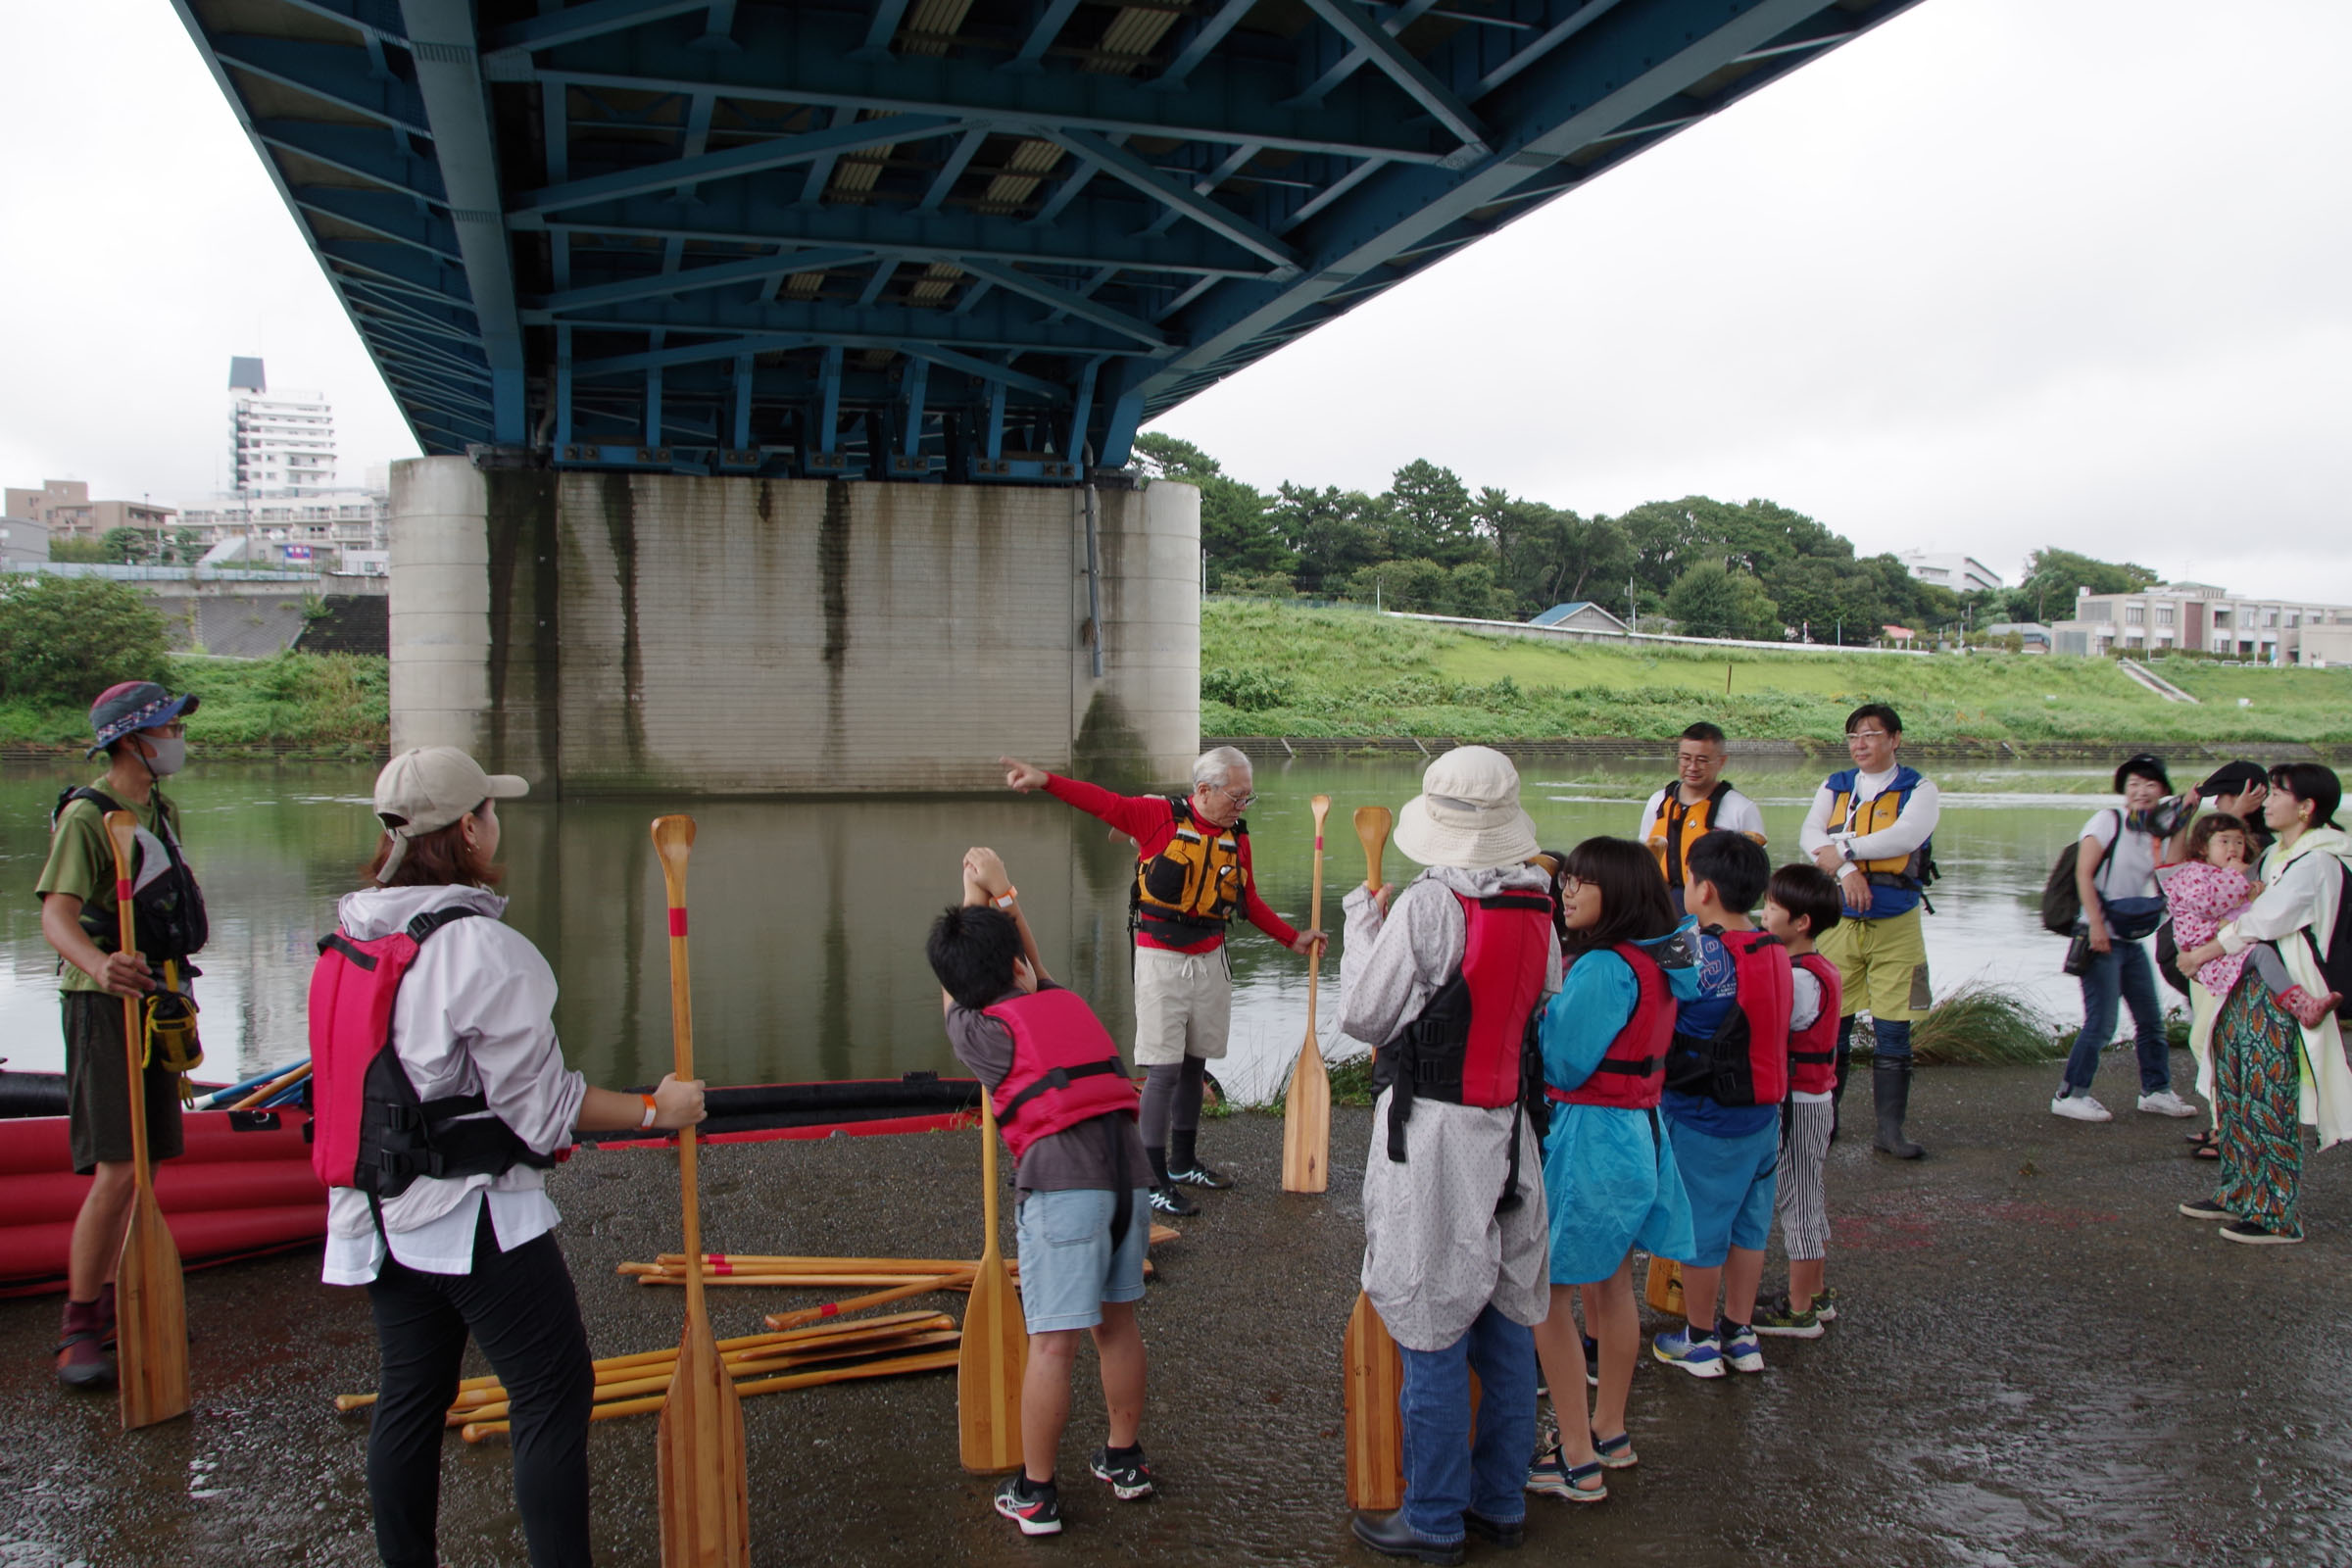 丸子の渡し祭り・多摩川で和むe体験